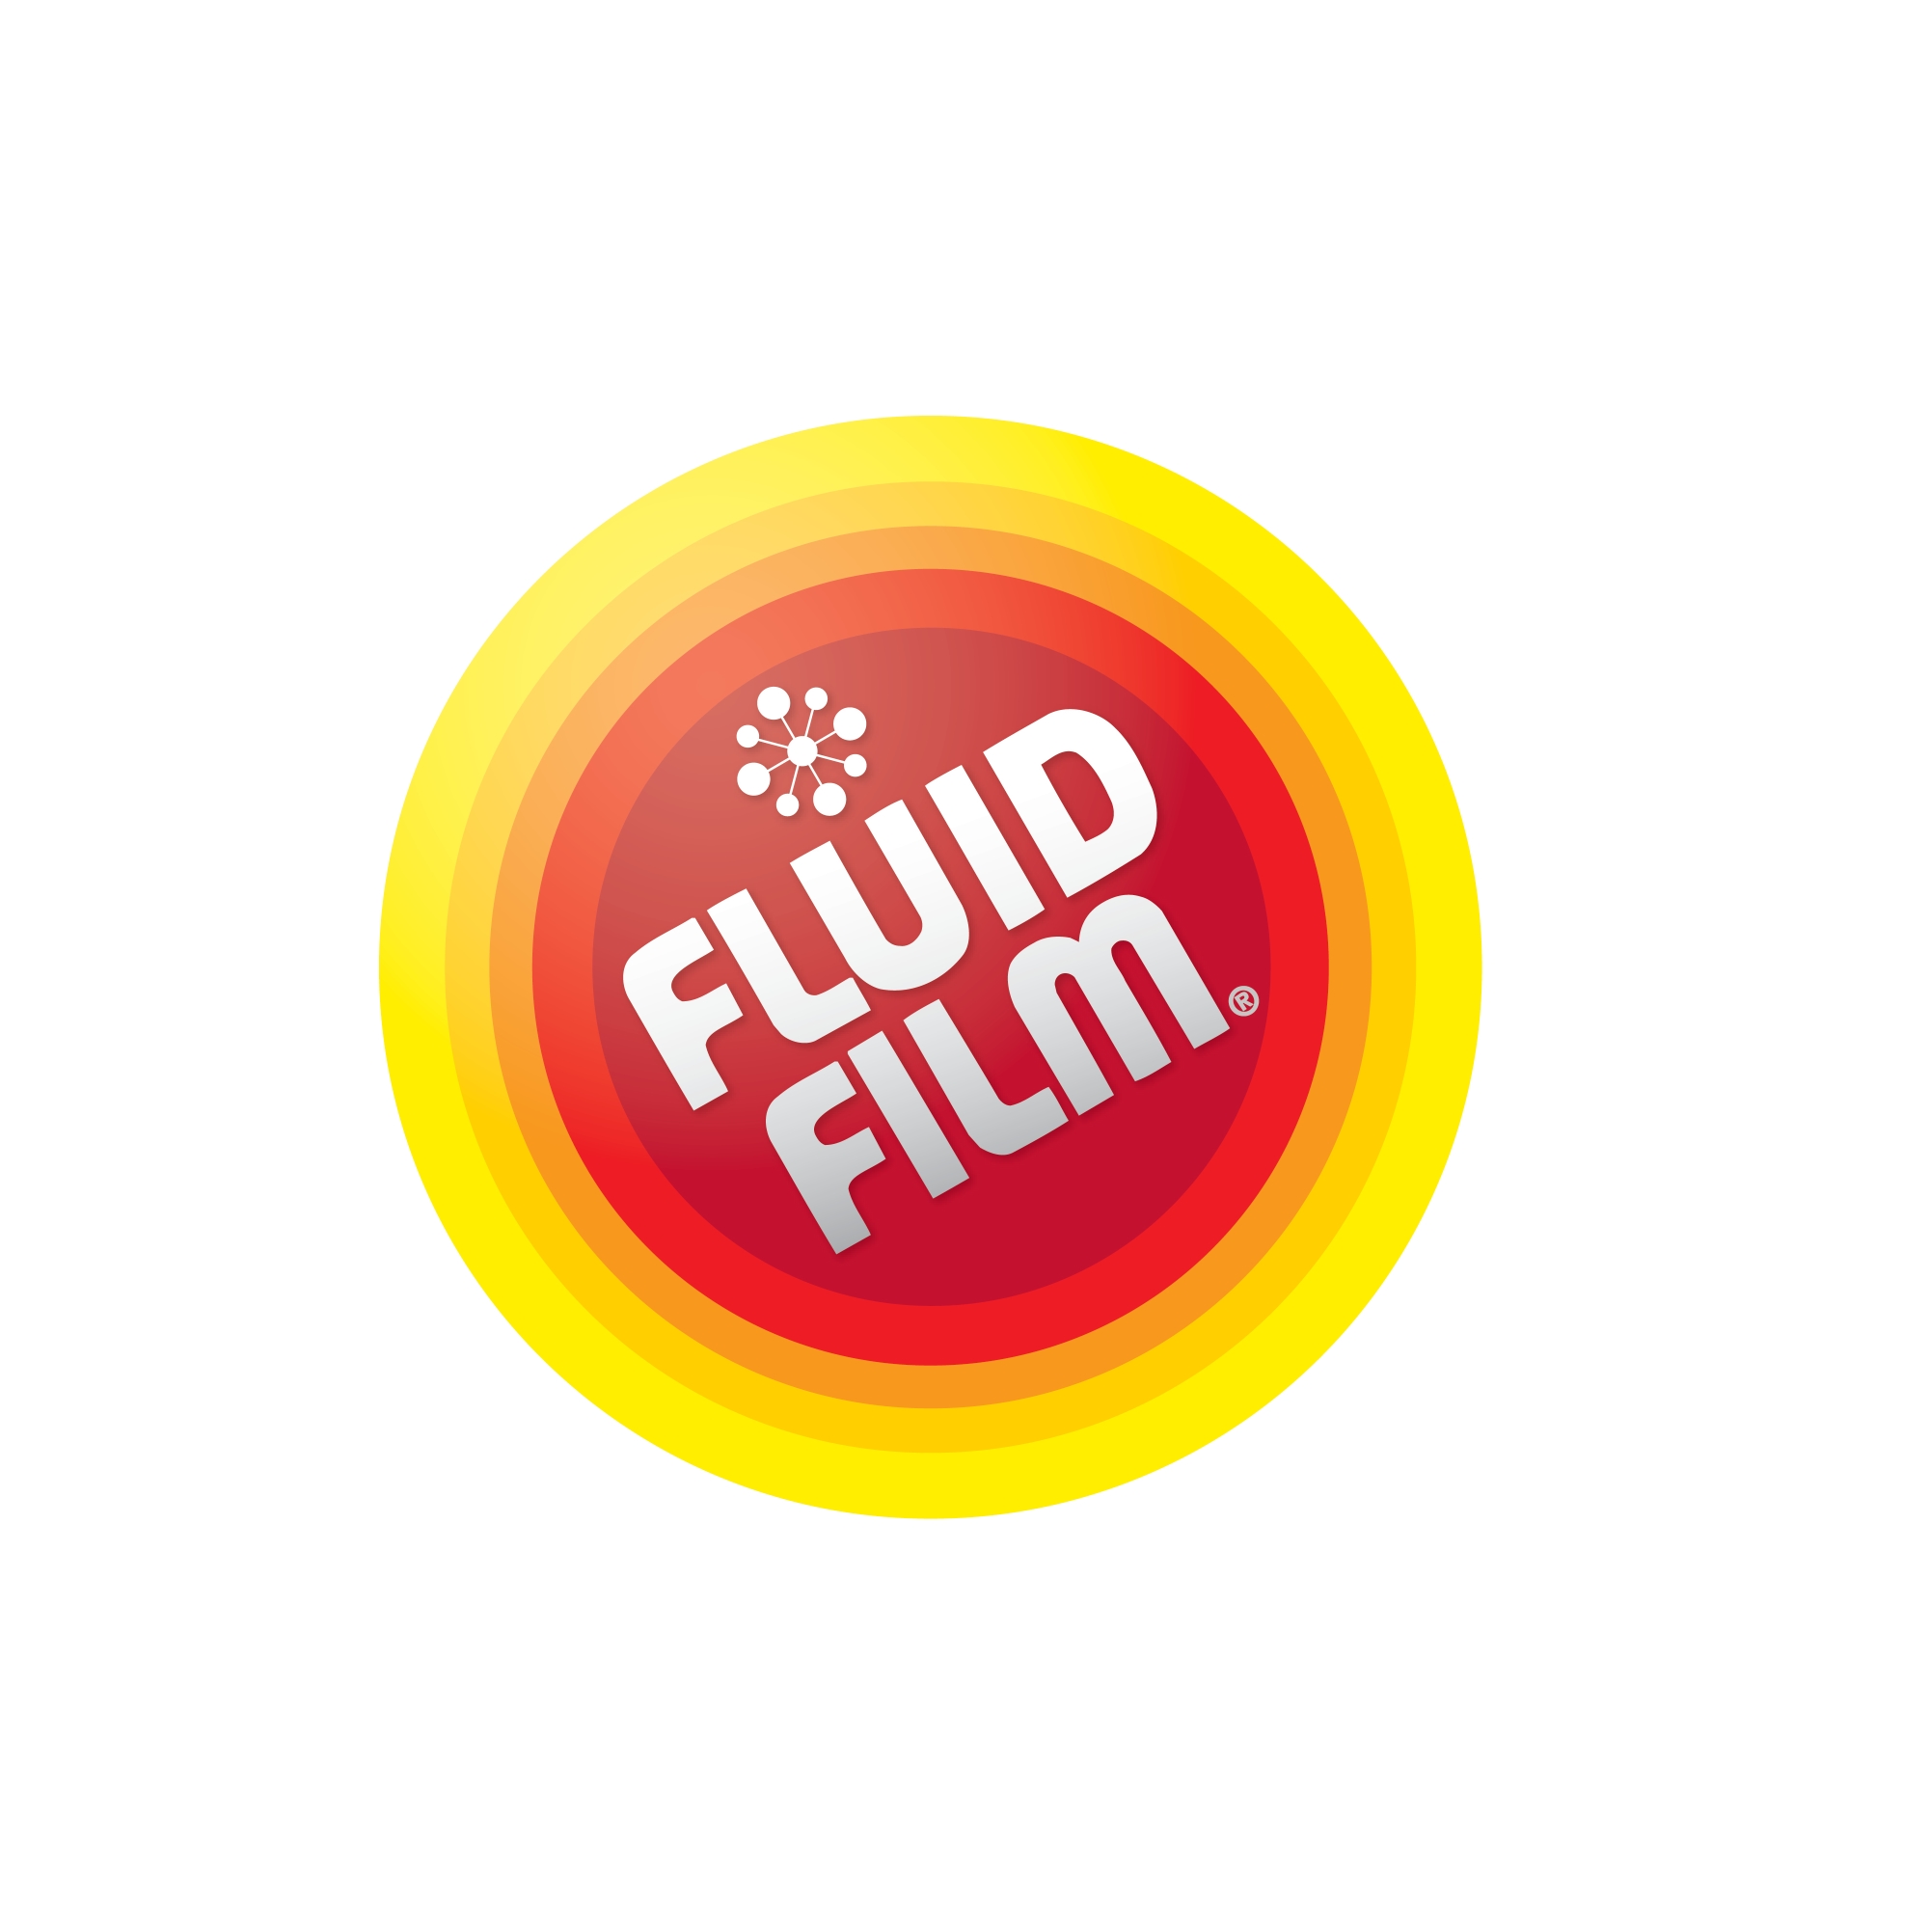 Fluid Film, Perma Film, Multi Film